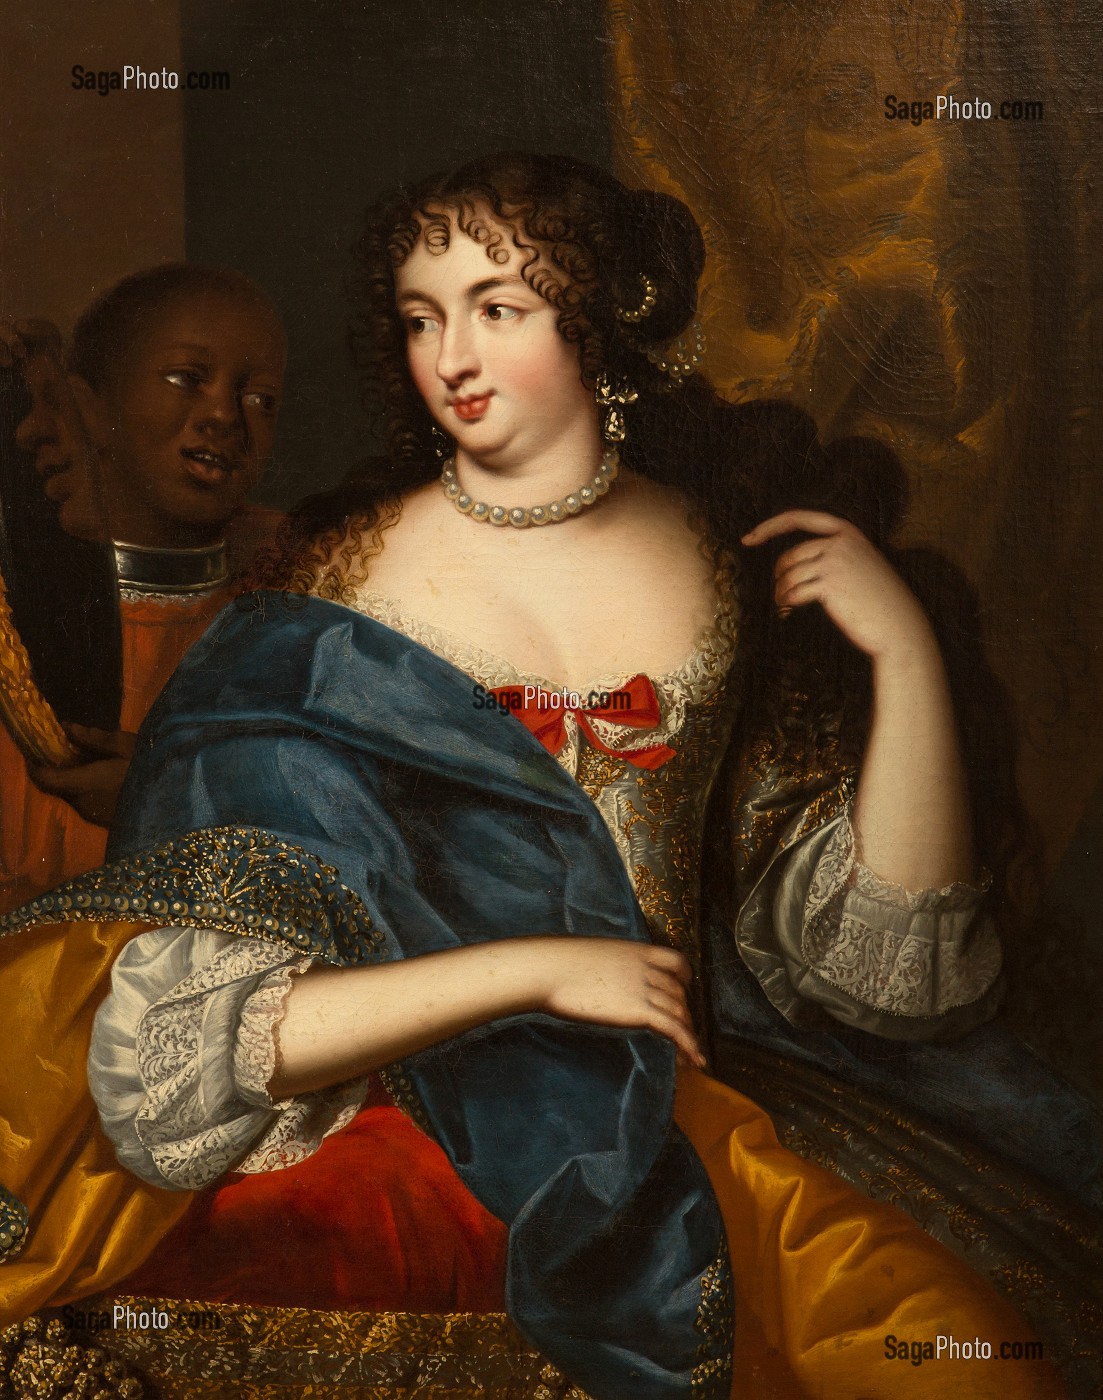 MADAME LA MARQUISE DE MONTESPAN  (1640-1707), NEE FRANCOISE ATHENAIS DE ROCHECHOUART DE MORTEMART, FAVORITE DU ROI LOUIS XIV, TABLEAU DE L'ECOLE FRANCAISE DU 17EME SIECLE, GRAND SALON, CHATEAU DE MAINTENON, EURE-ET-LOIR (28), FRANCE 